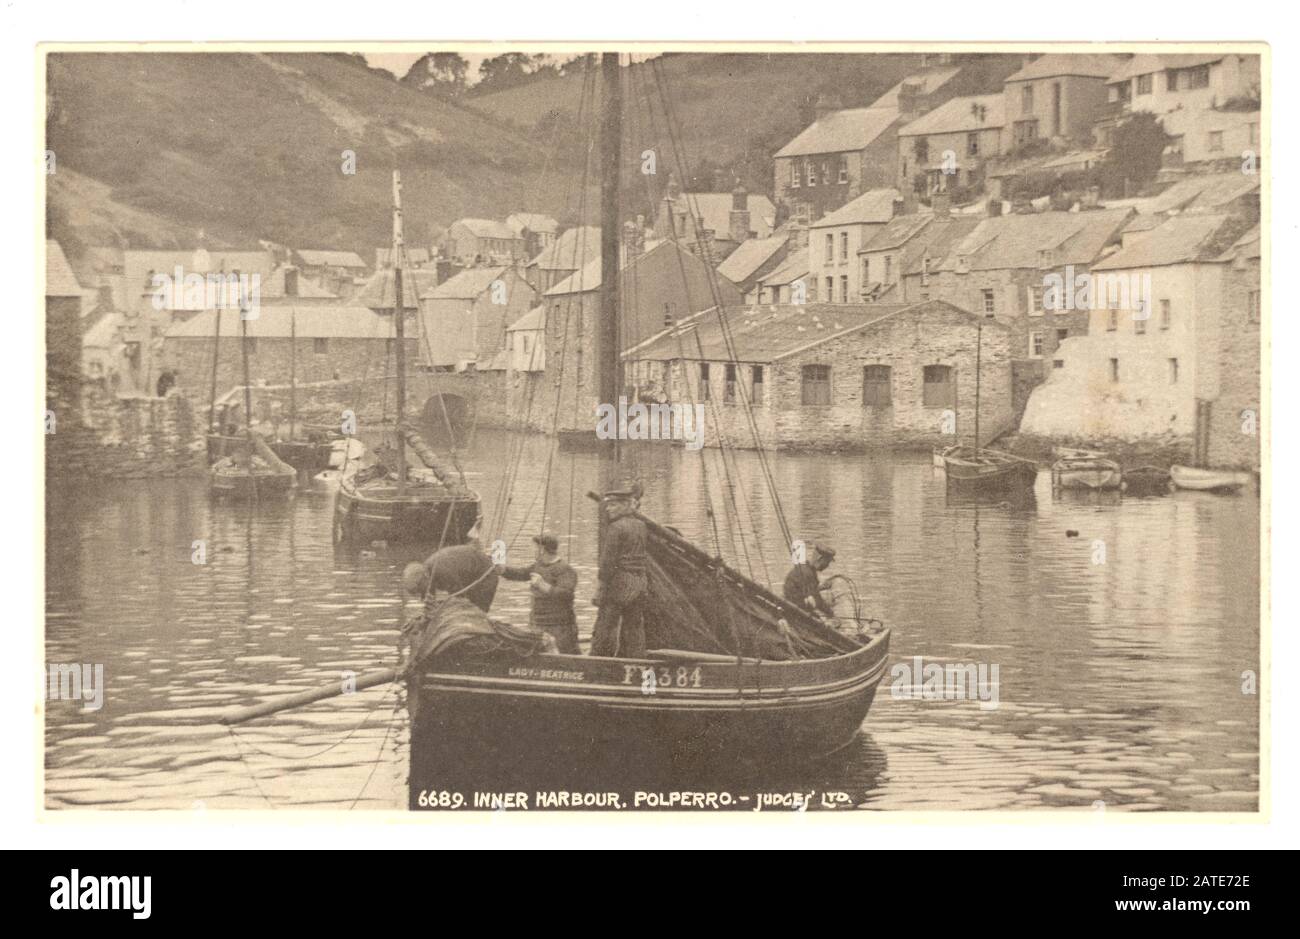 Carte postale du début des années 1900 de pittoresque port intérieur, avec pêcheur et son bateau, Polperro, Cornwall, Angleterre, Royaume-Uni vers les années 1920 Banque D'Images